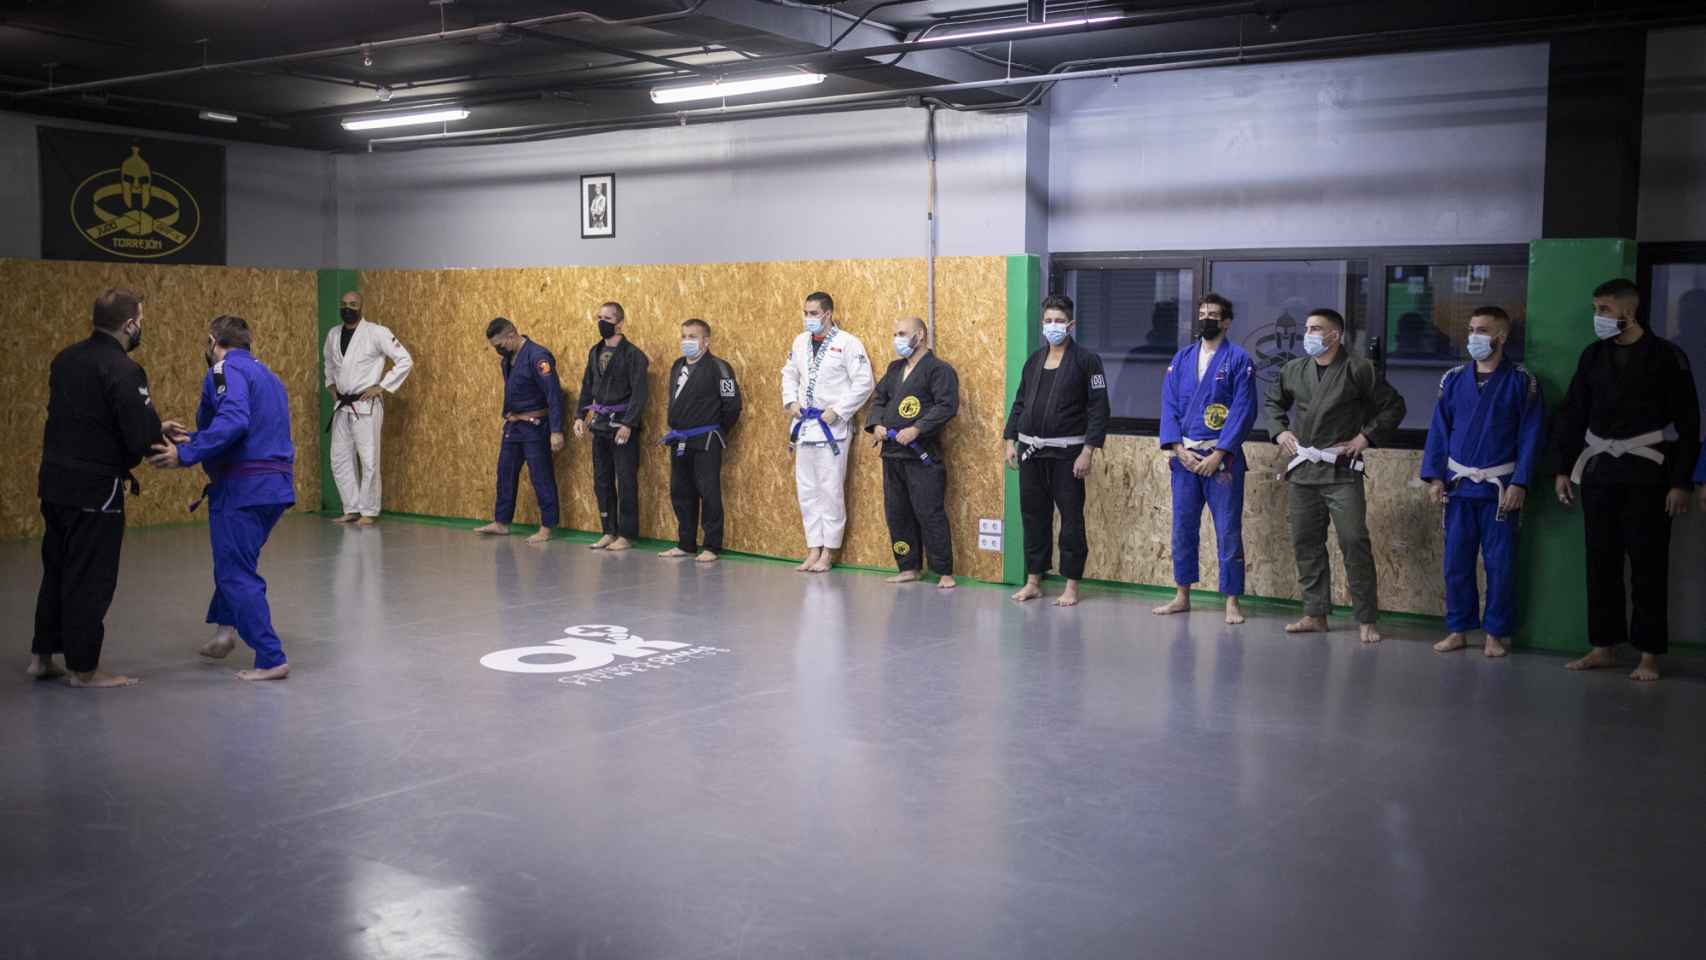 EL ESPAÑOL | Porfolio presencia una clase de jiu-jitsu brasileño junto a El Chojin (al fondo, a la izquierda).